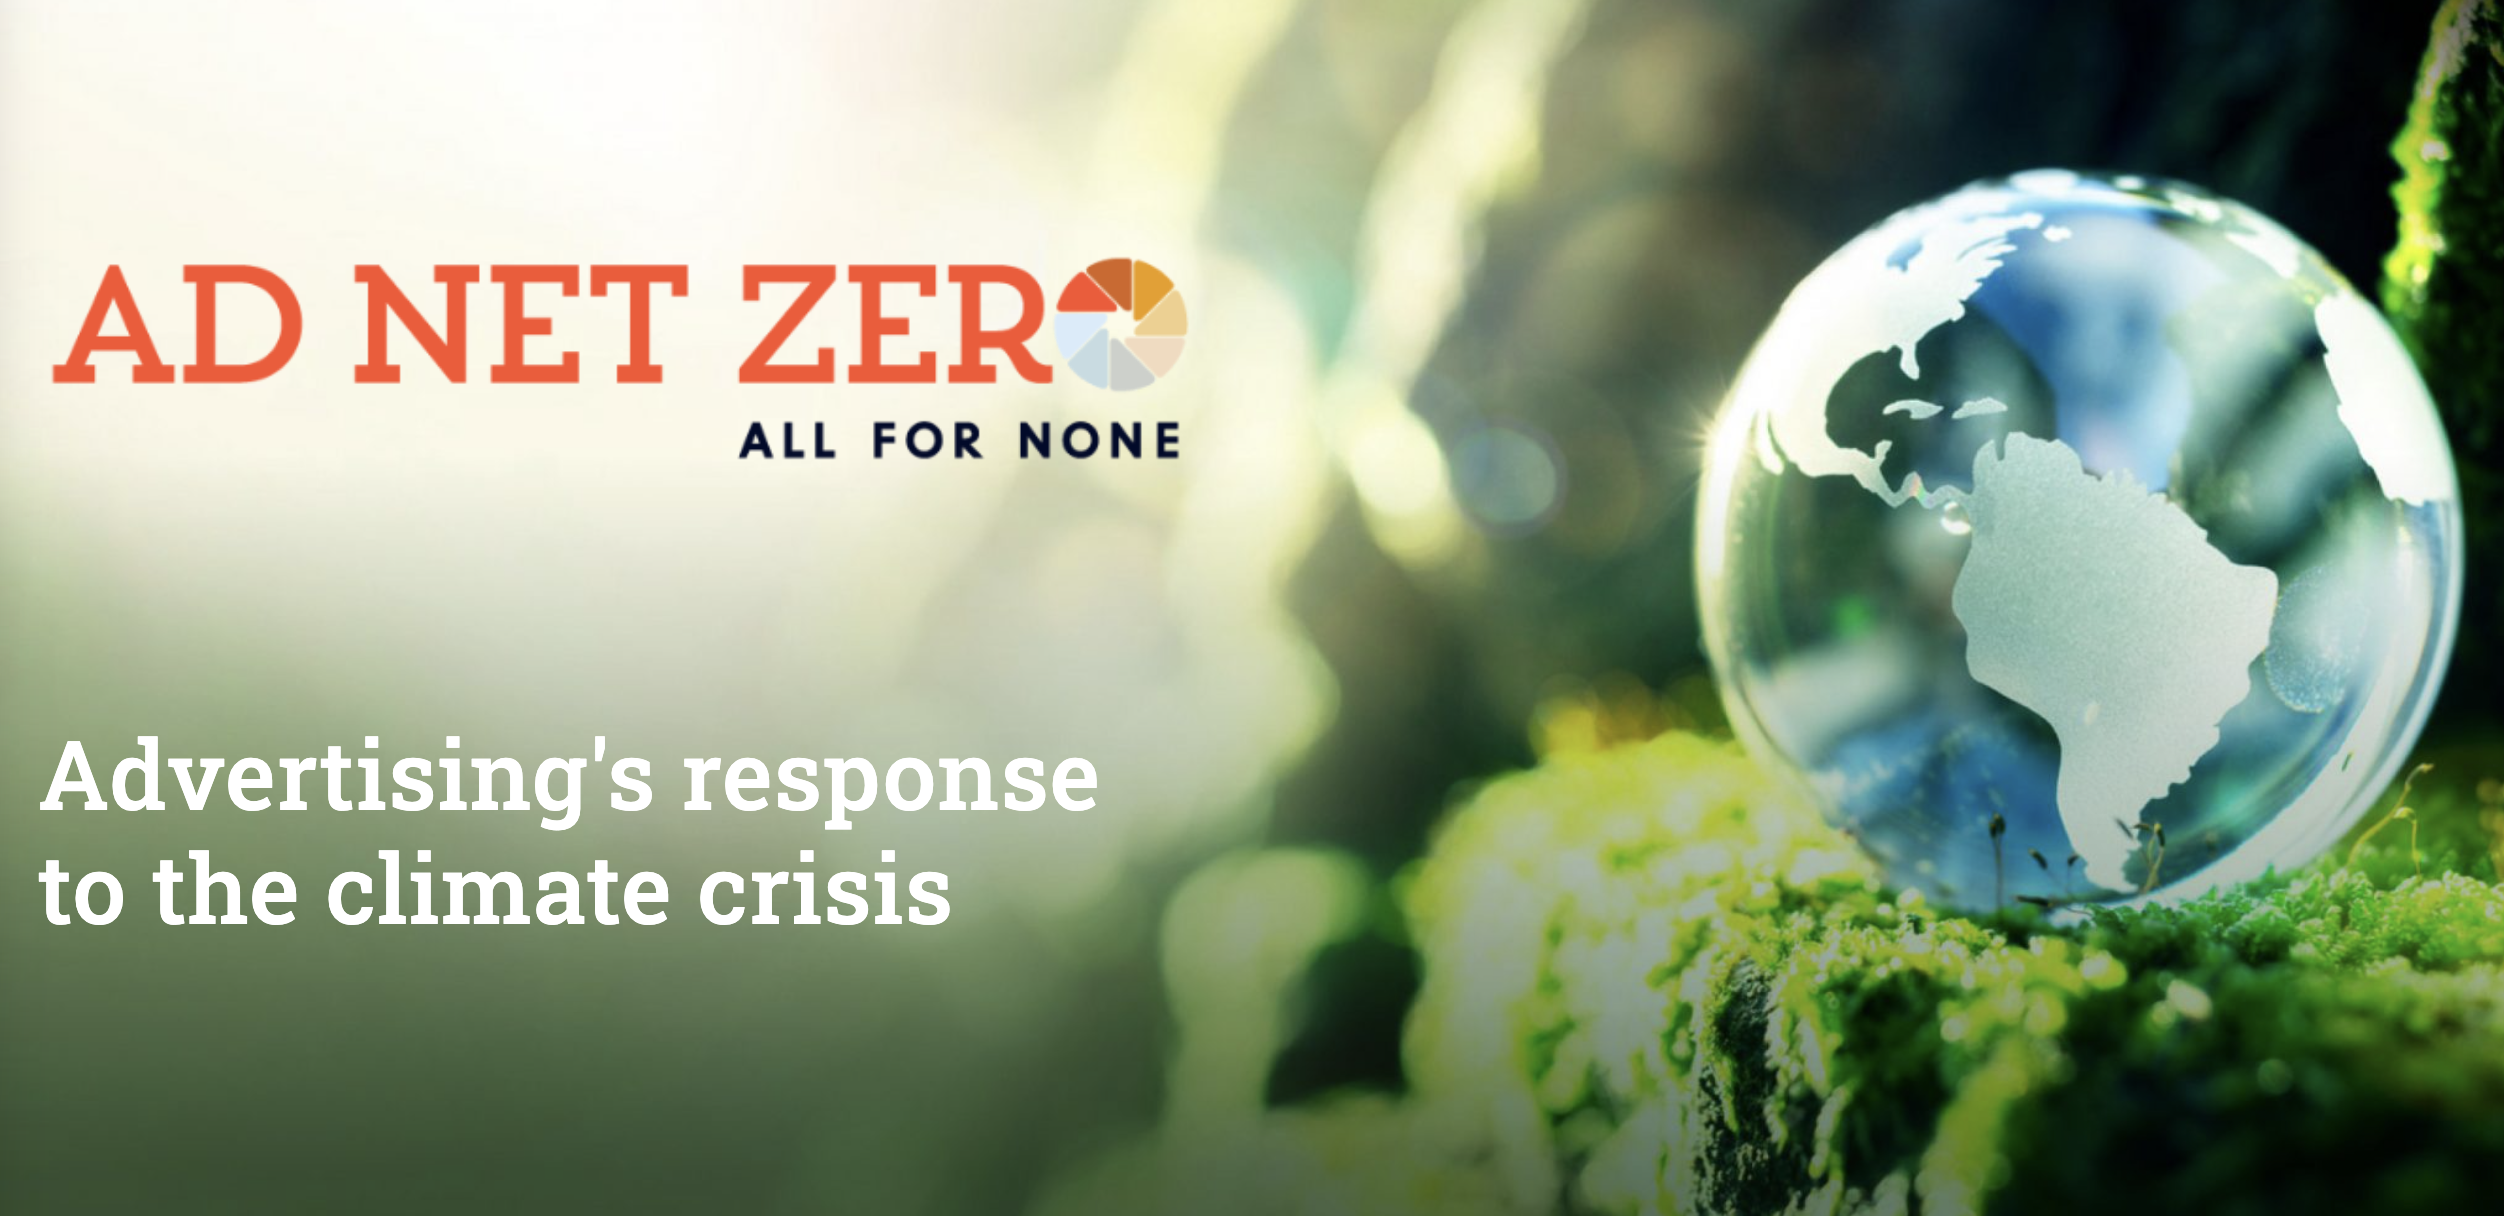 SeenThis sluit zich aan bij Ad Net Zero, de stuurgroep in de reclame voor klimaatverandering